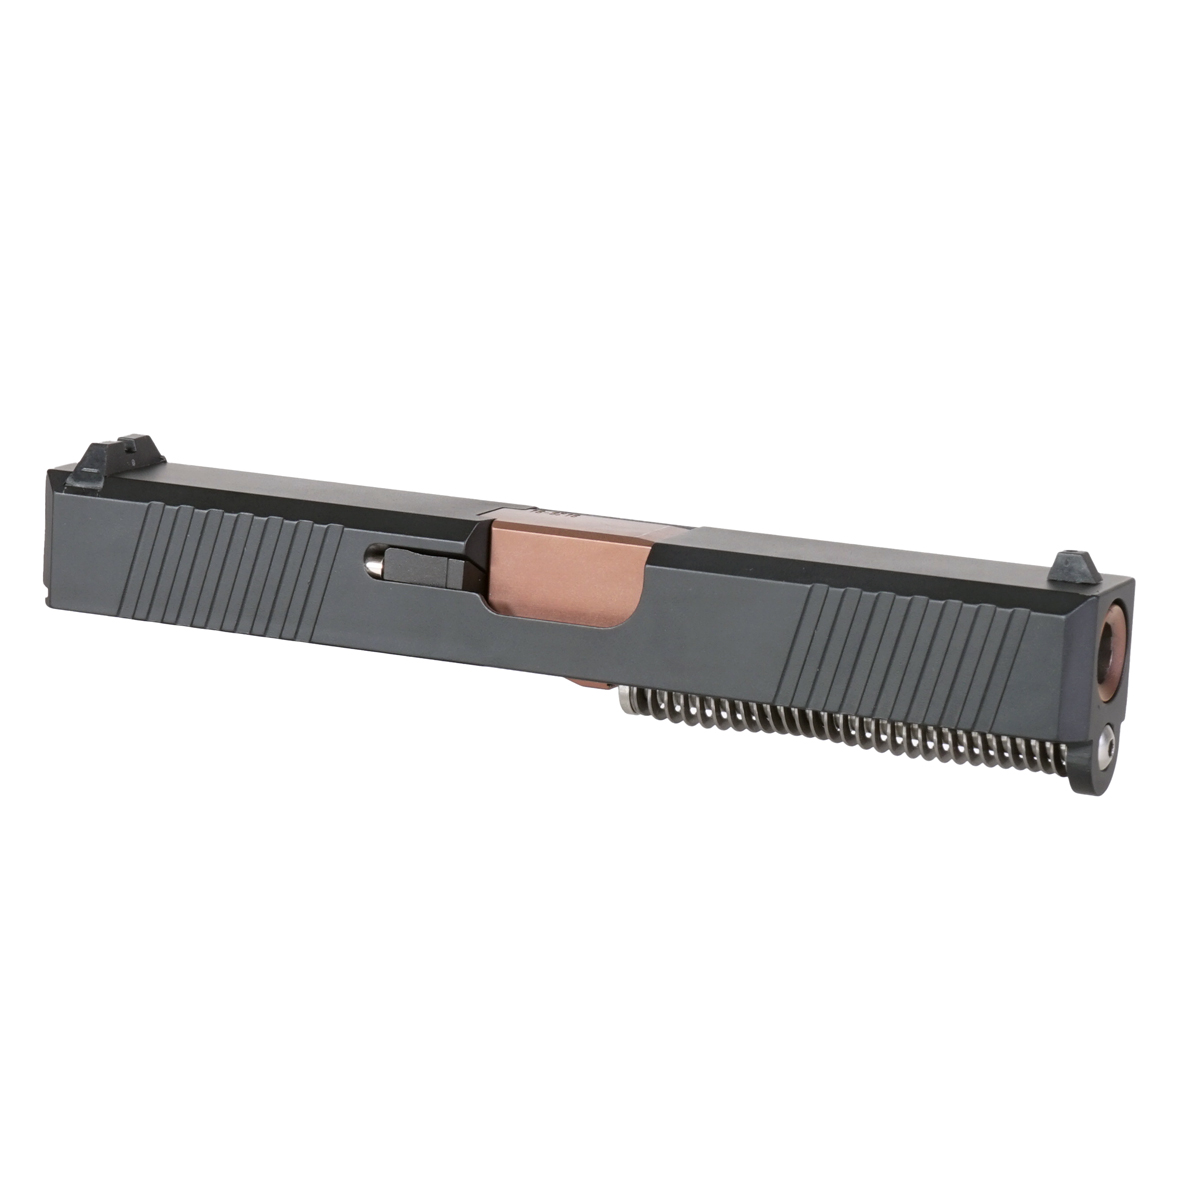 DTT 'Mastiff' 9mm Complete Slide Kit - Glock 19 Gen 1-3 Compatible